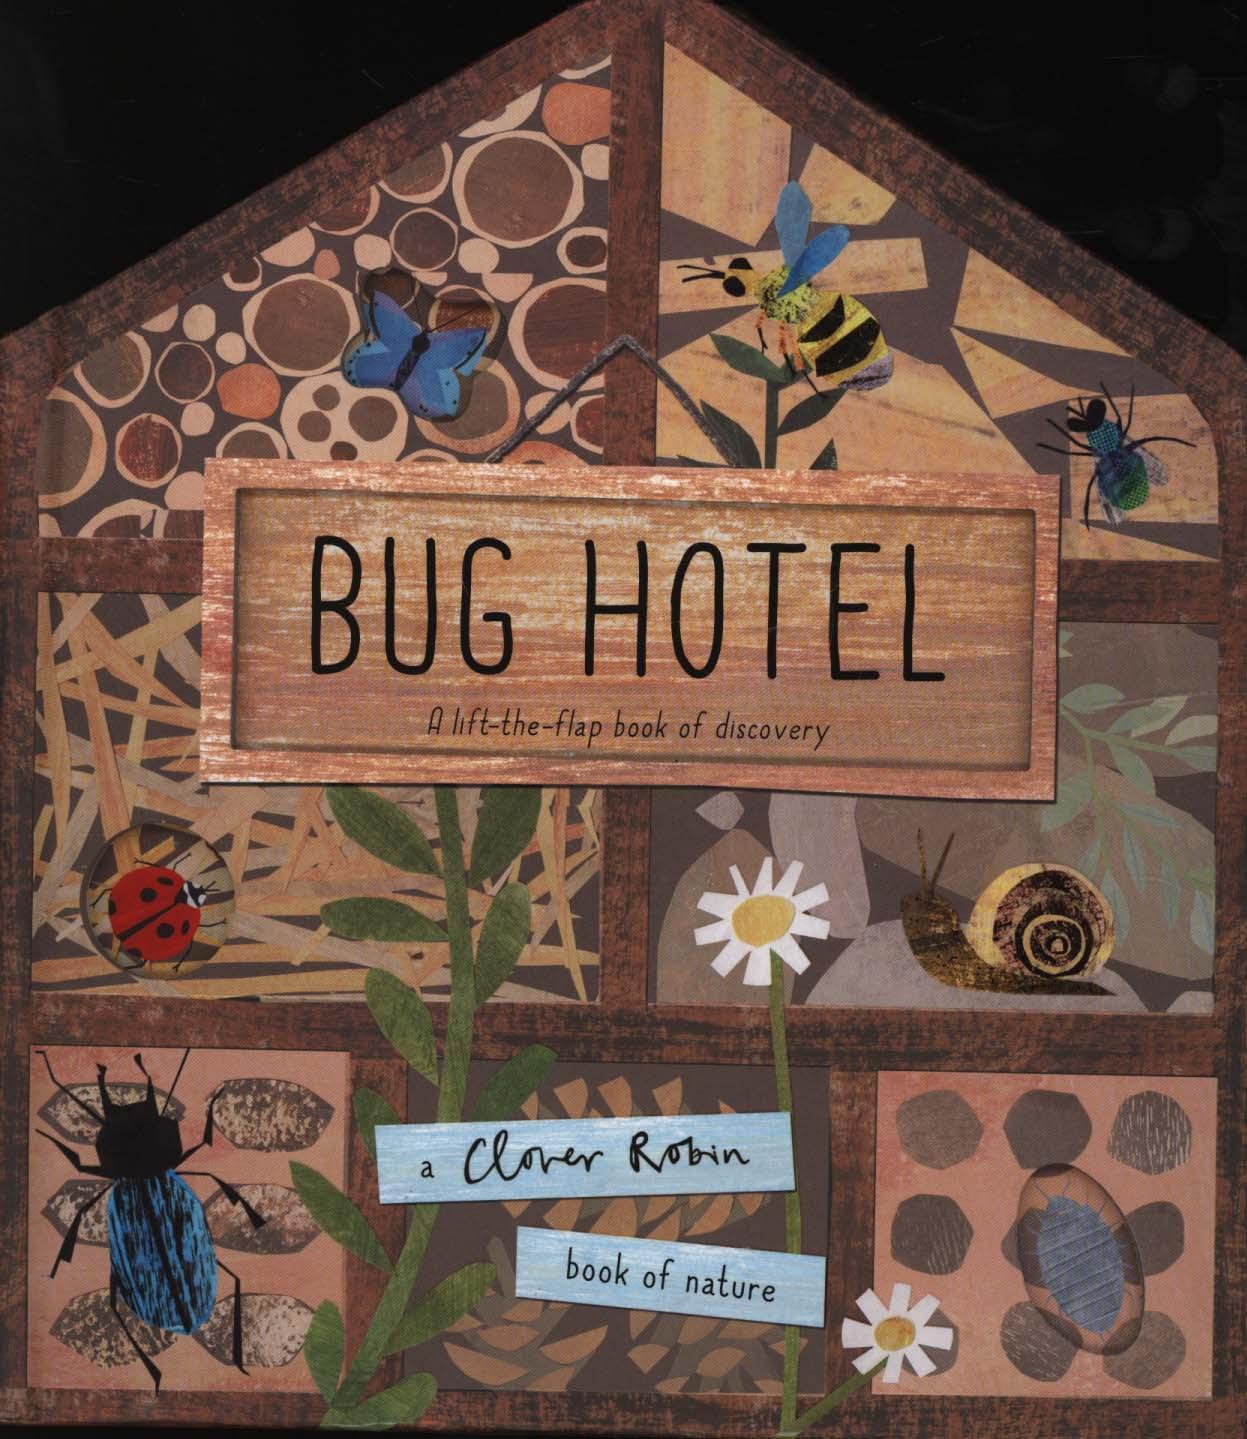 Bug Hotel